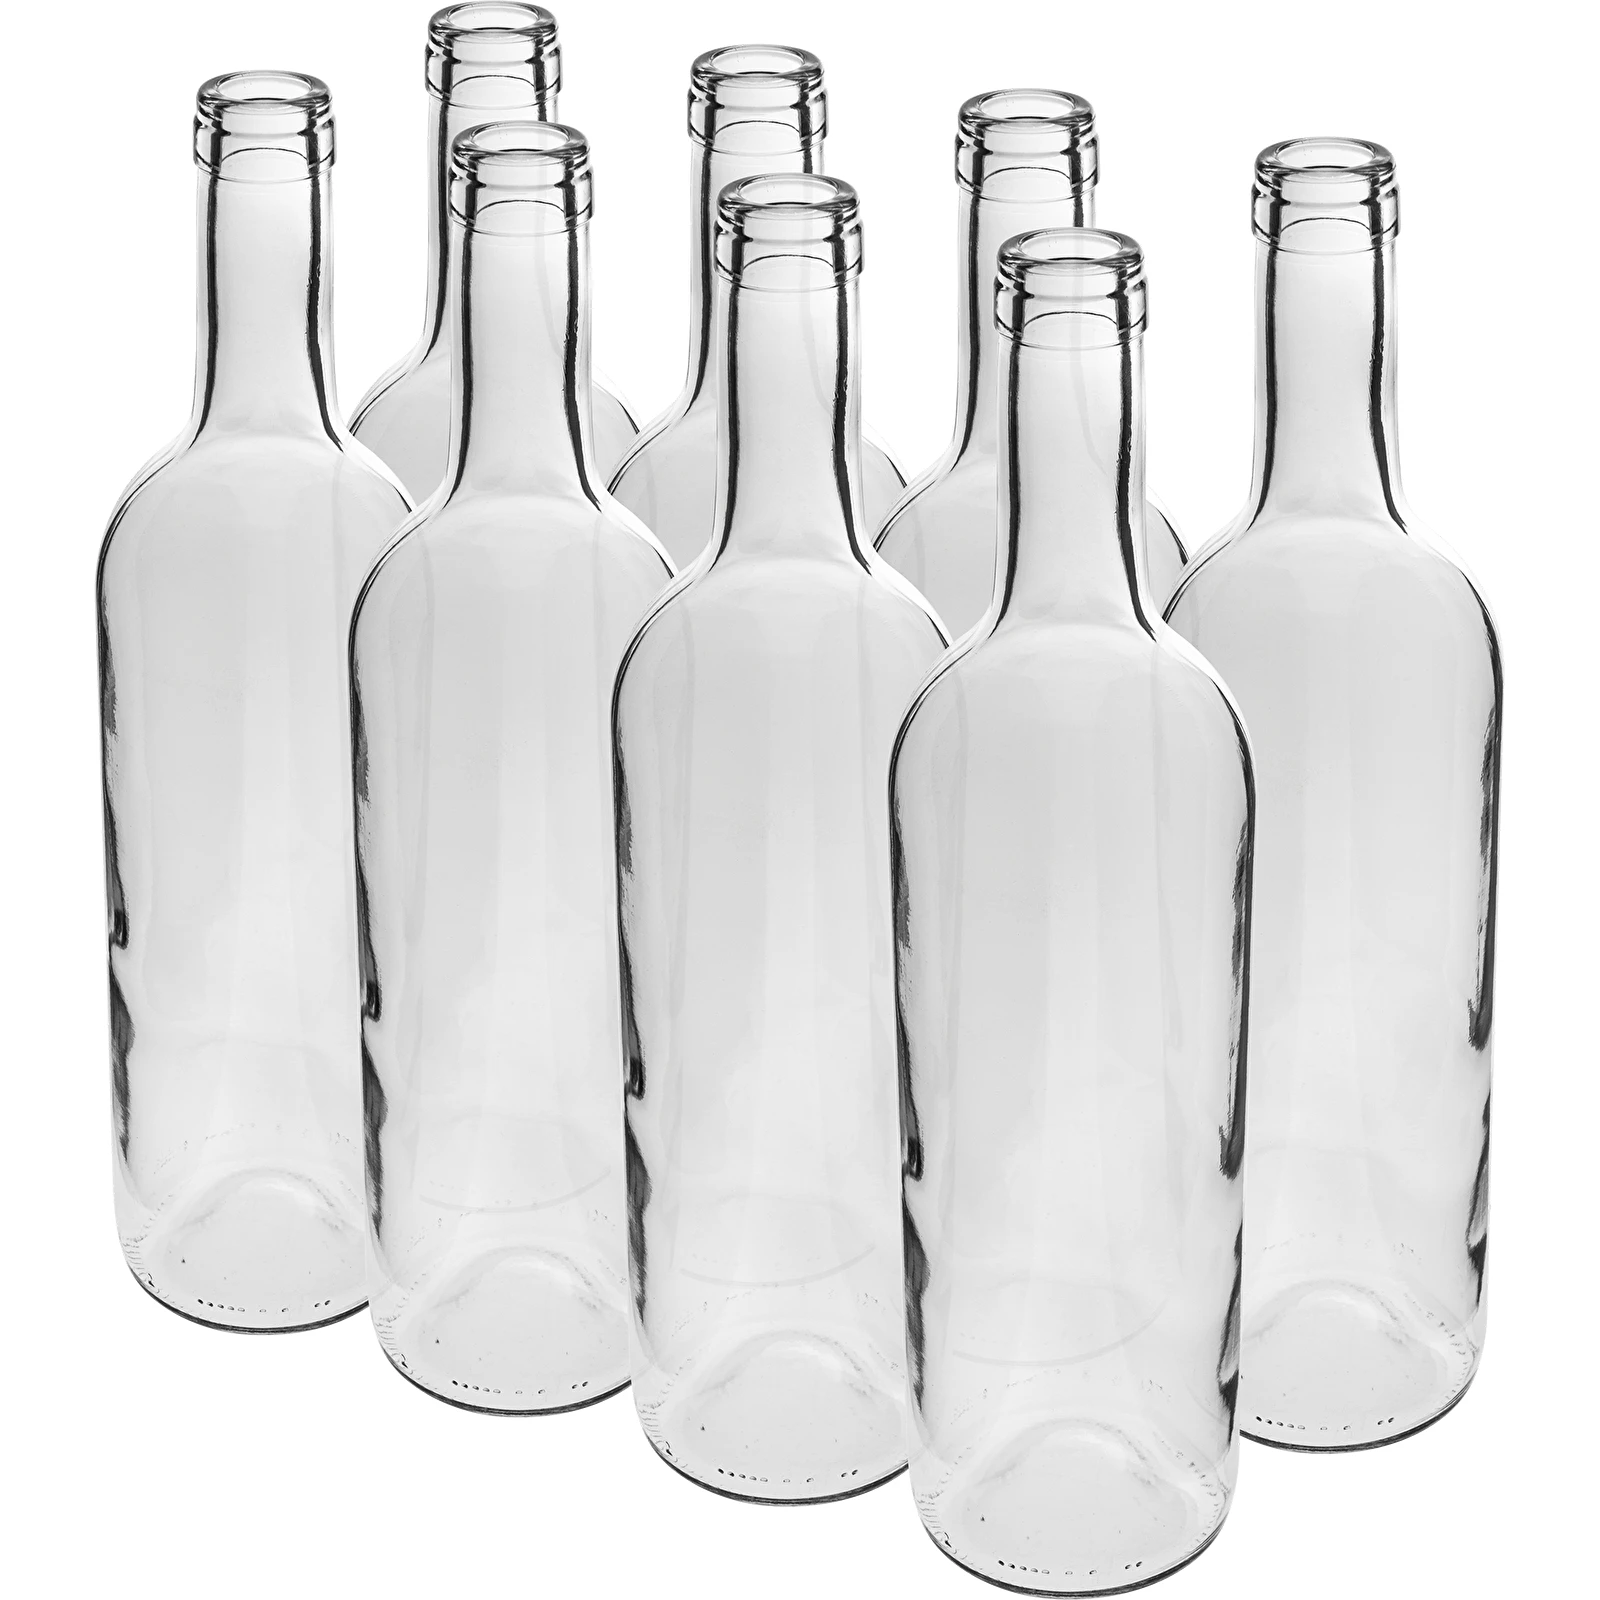 Weinflasche 0,75 L weiß St. von Verpackung - symbol:631461 8 (flaschen) –